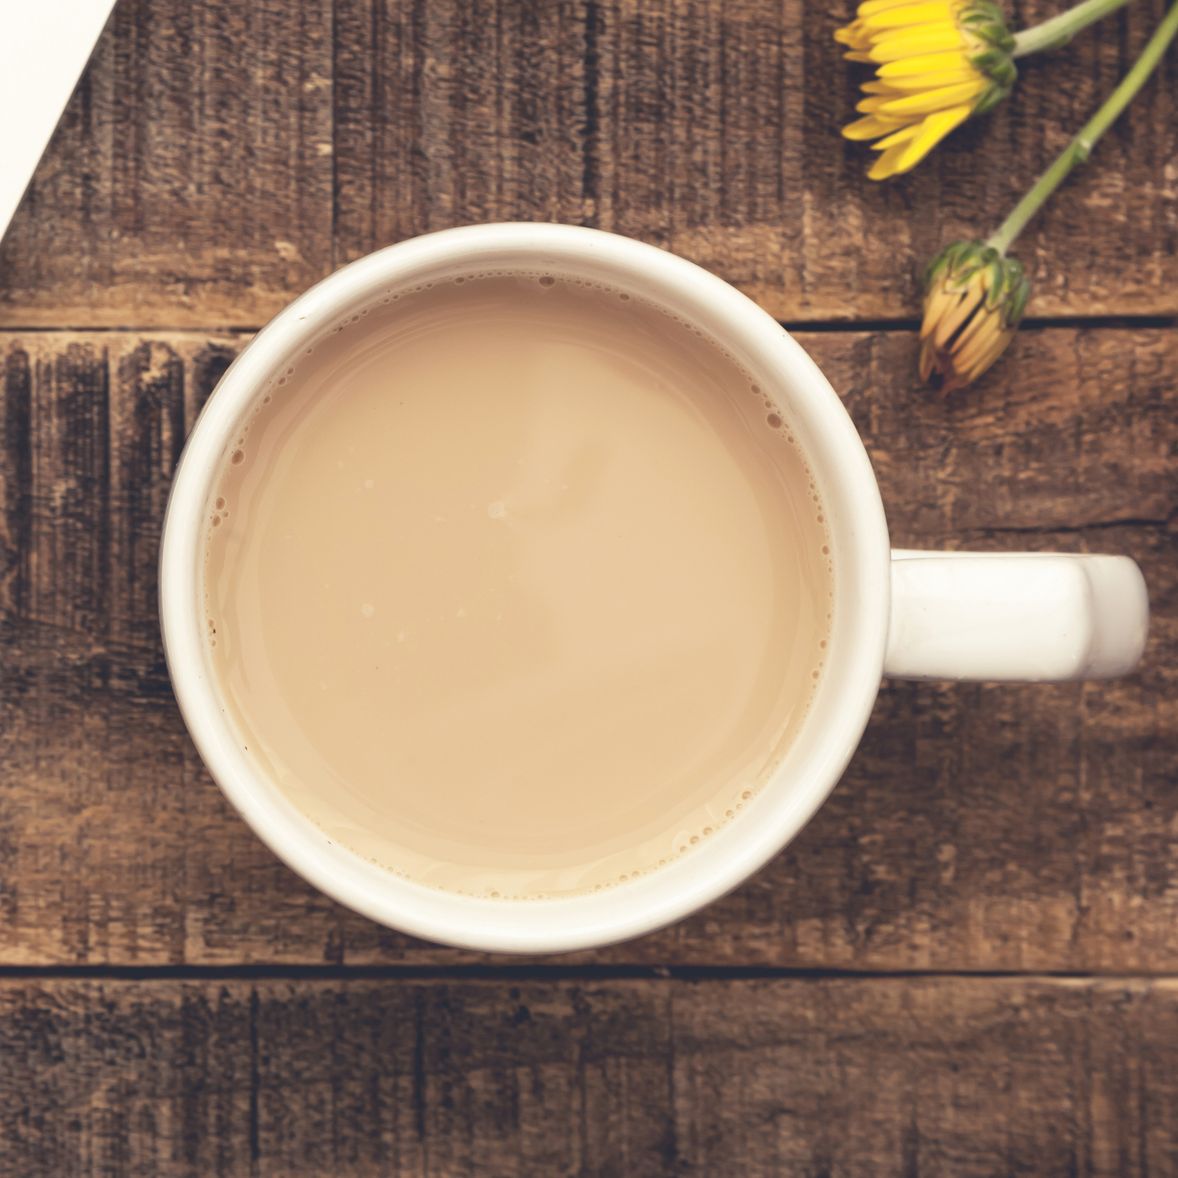 10 tés calmantes que pueden combatir los síntomas del resfriado cuando se está enfermo